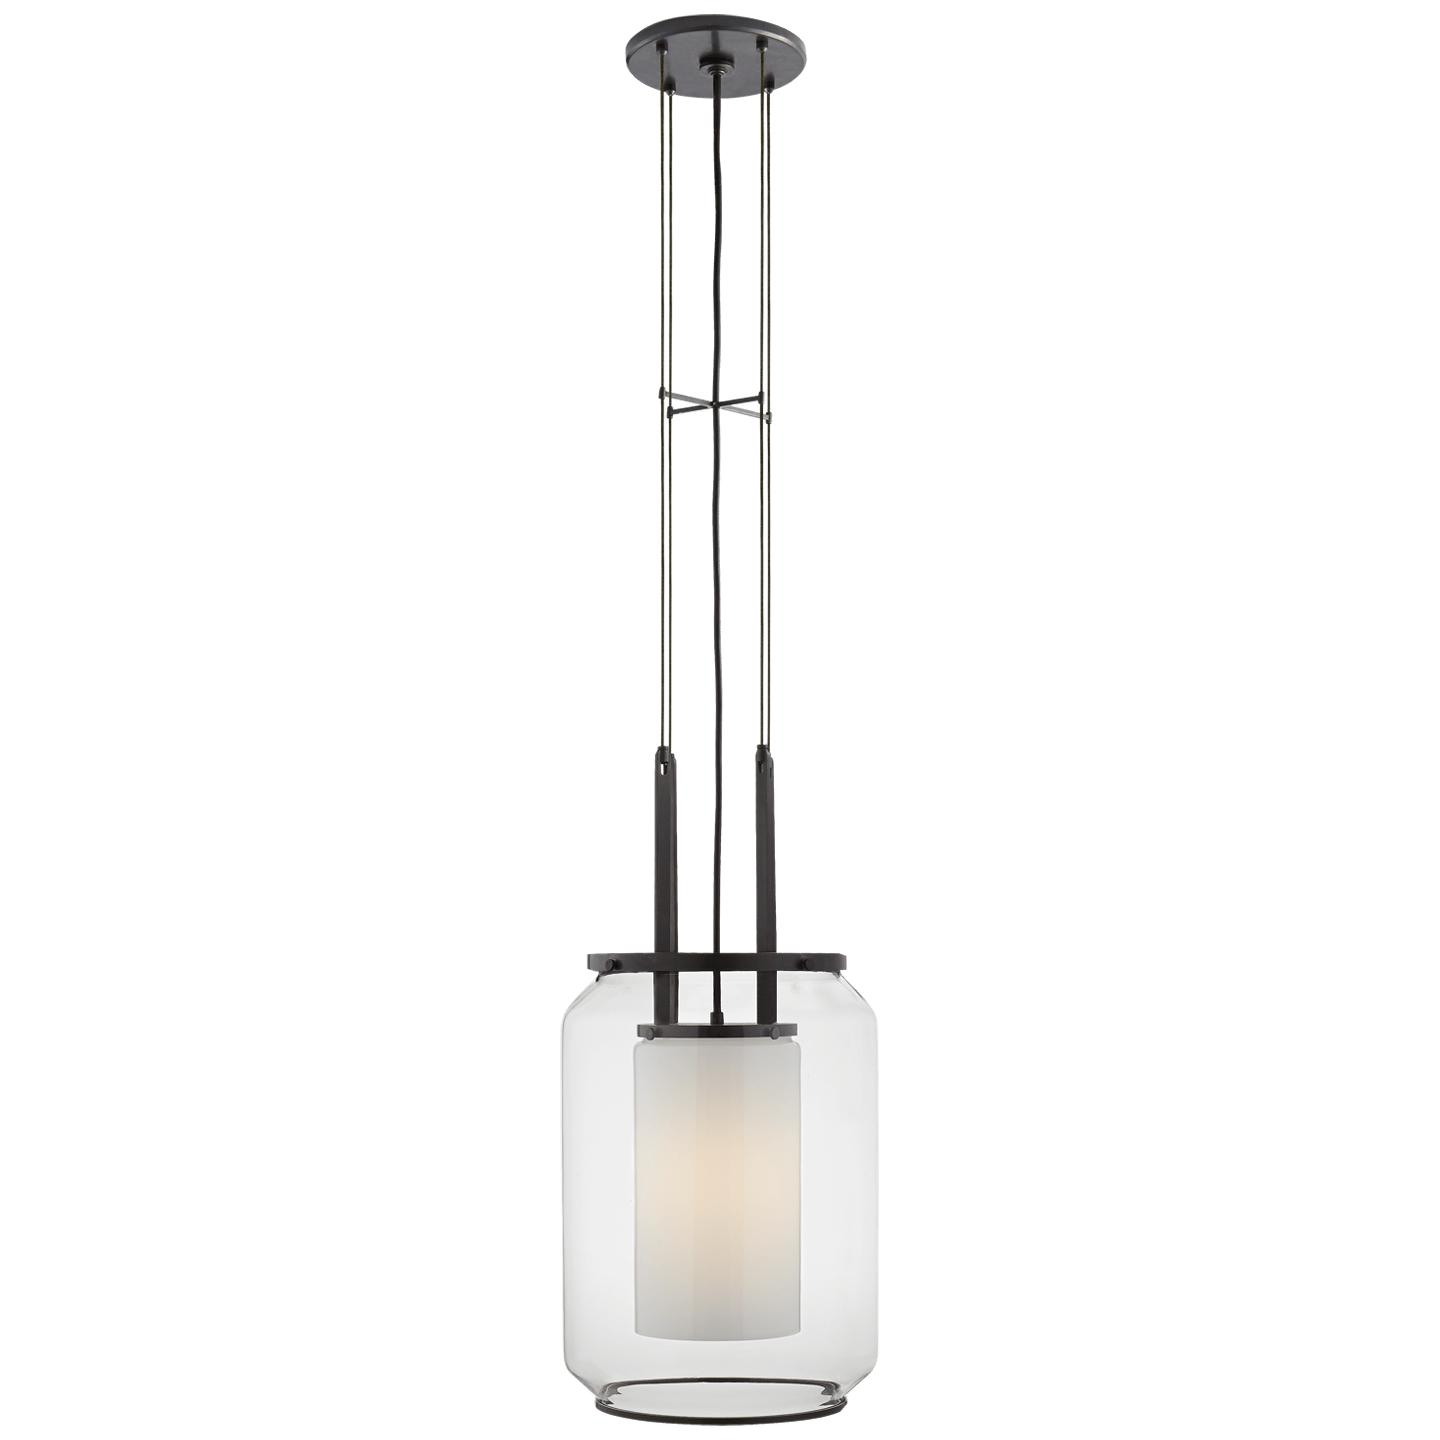 Купить Подвесной светильник Upton Large Lantern в интернет-магазине roooms.ru